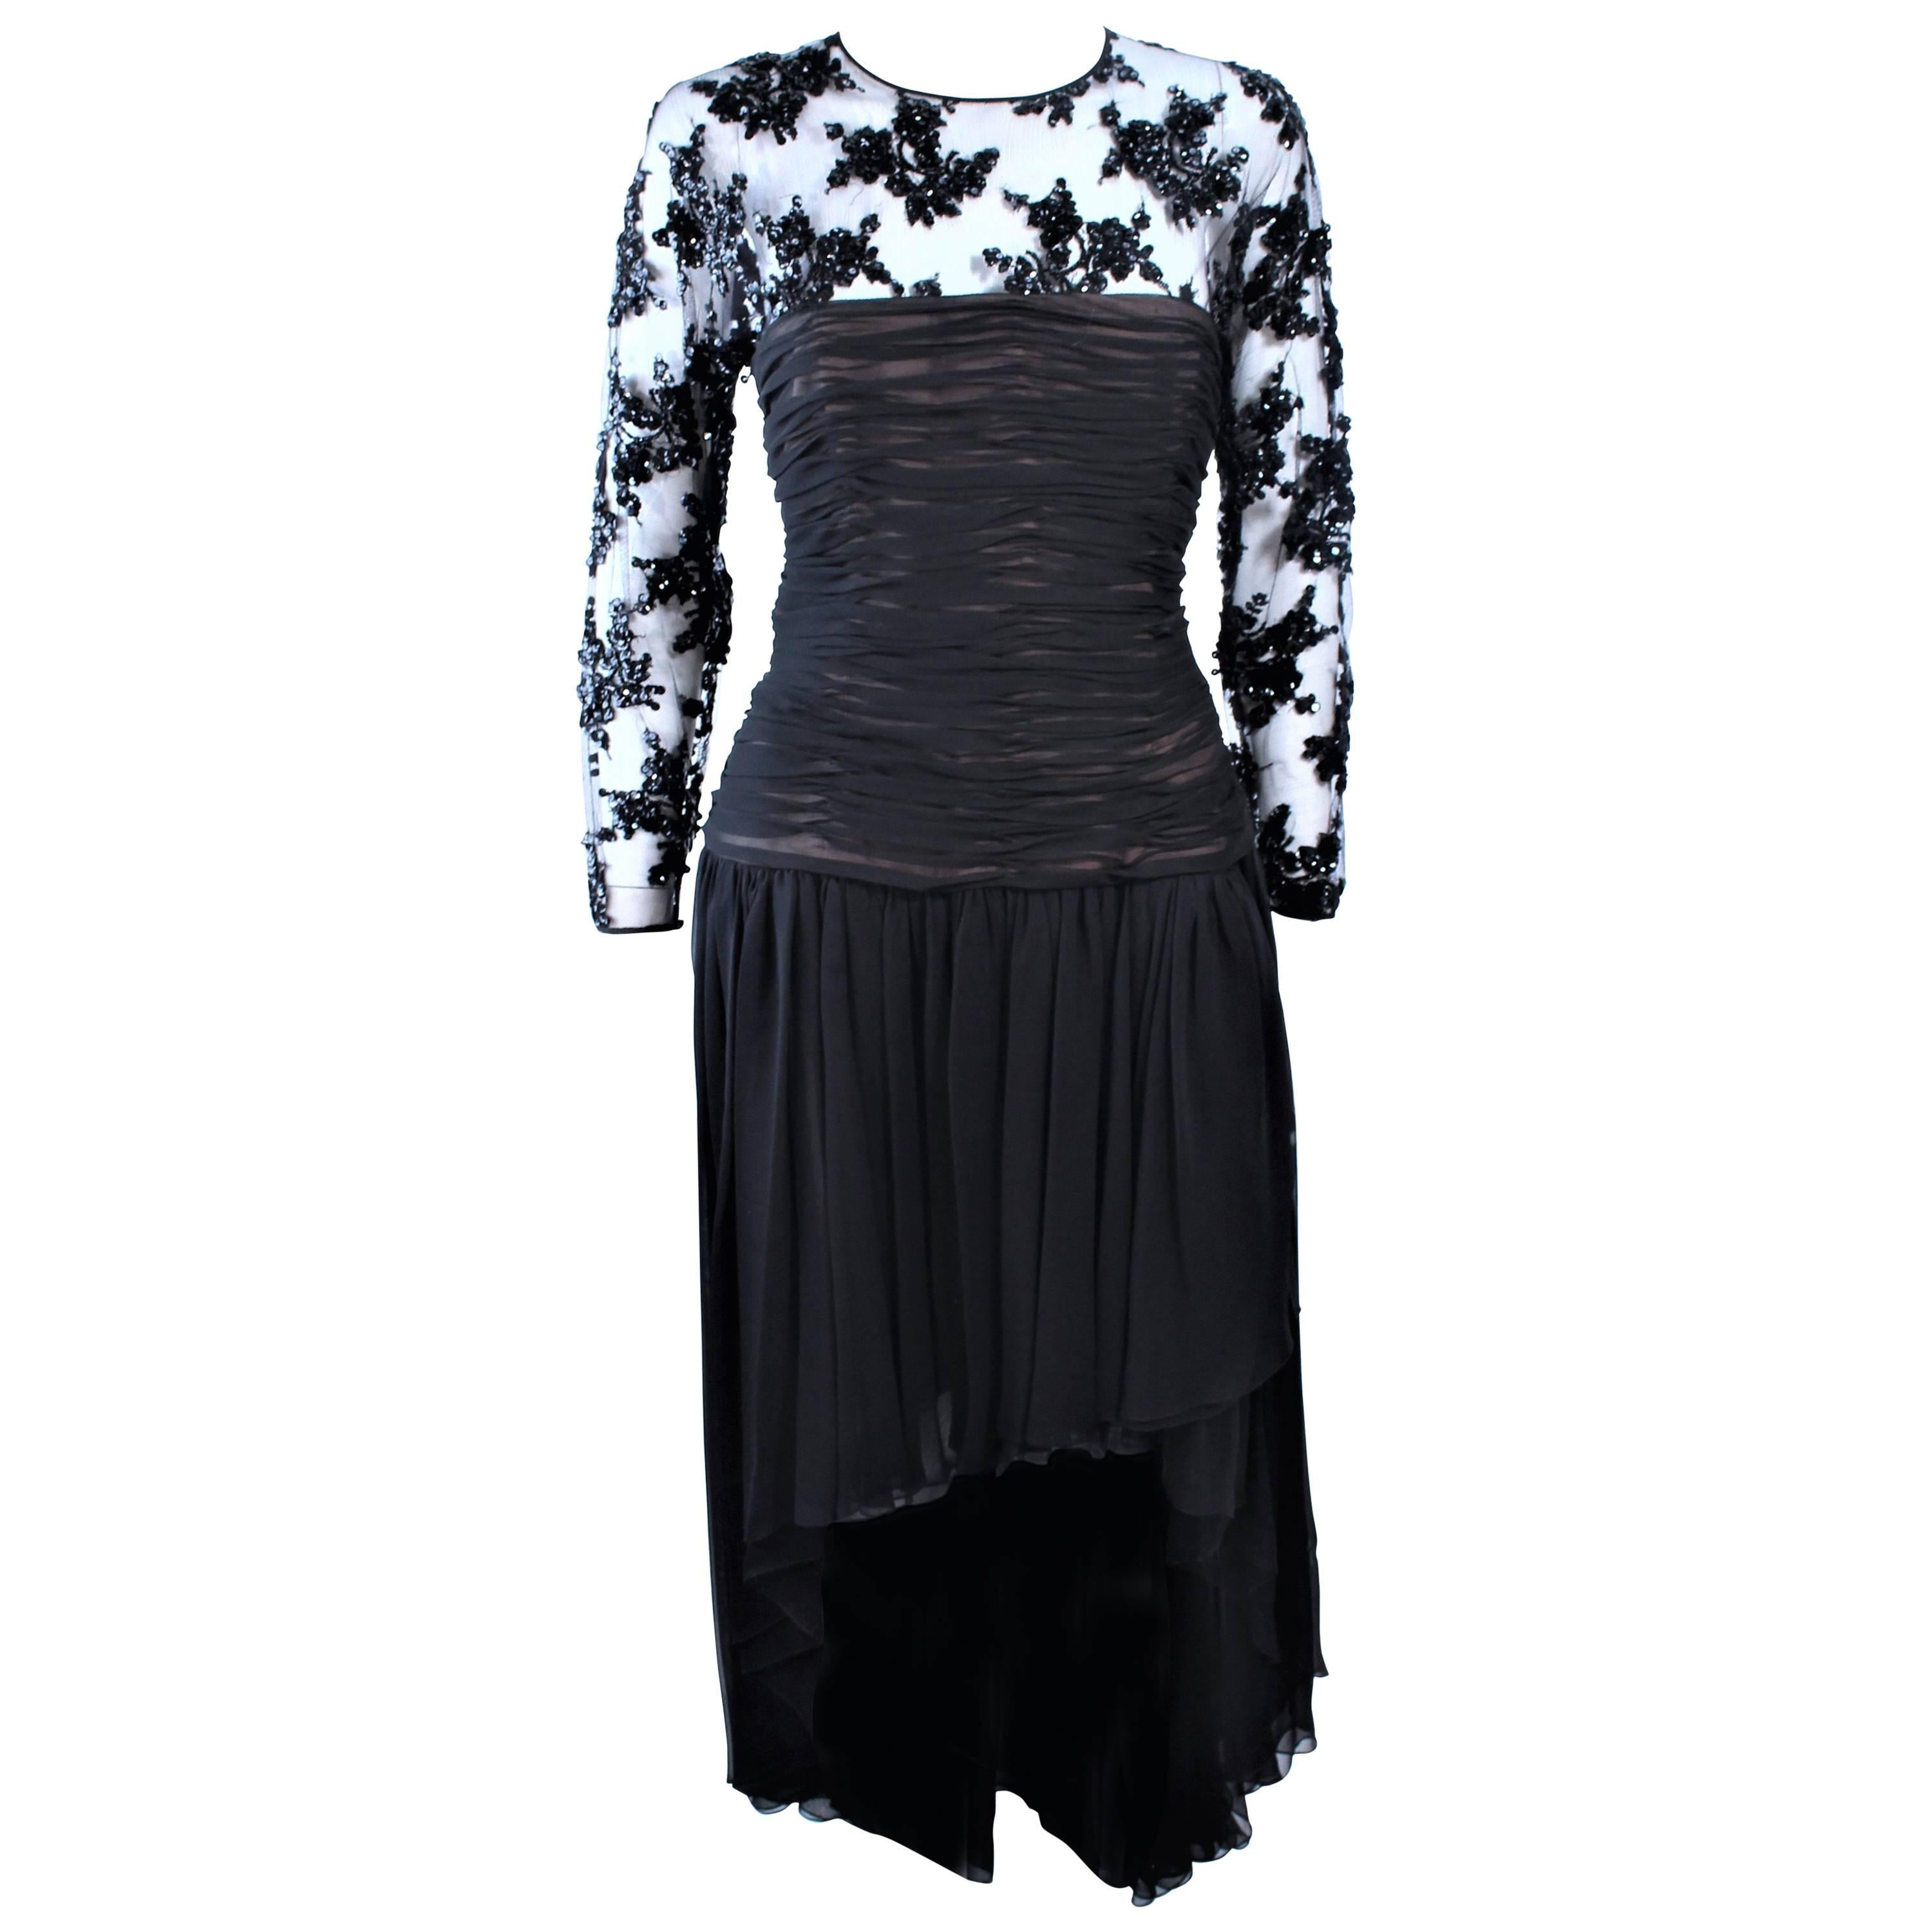 OSCAR DE LA RENTA Black Chiffon Lace High Low Cocktail Gown Size 12 14 For Sale